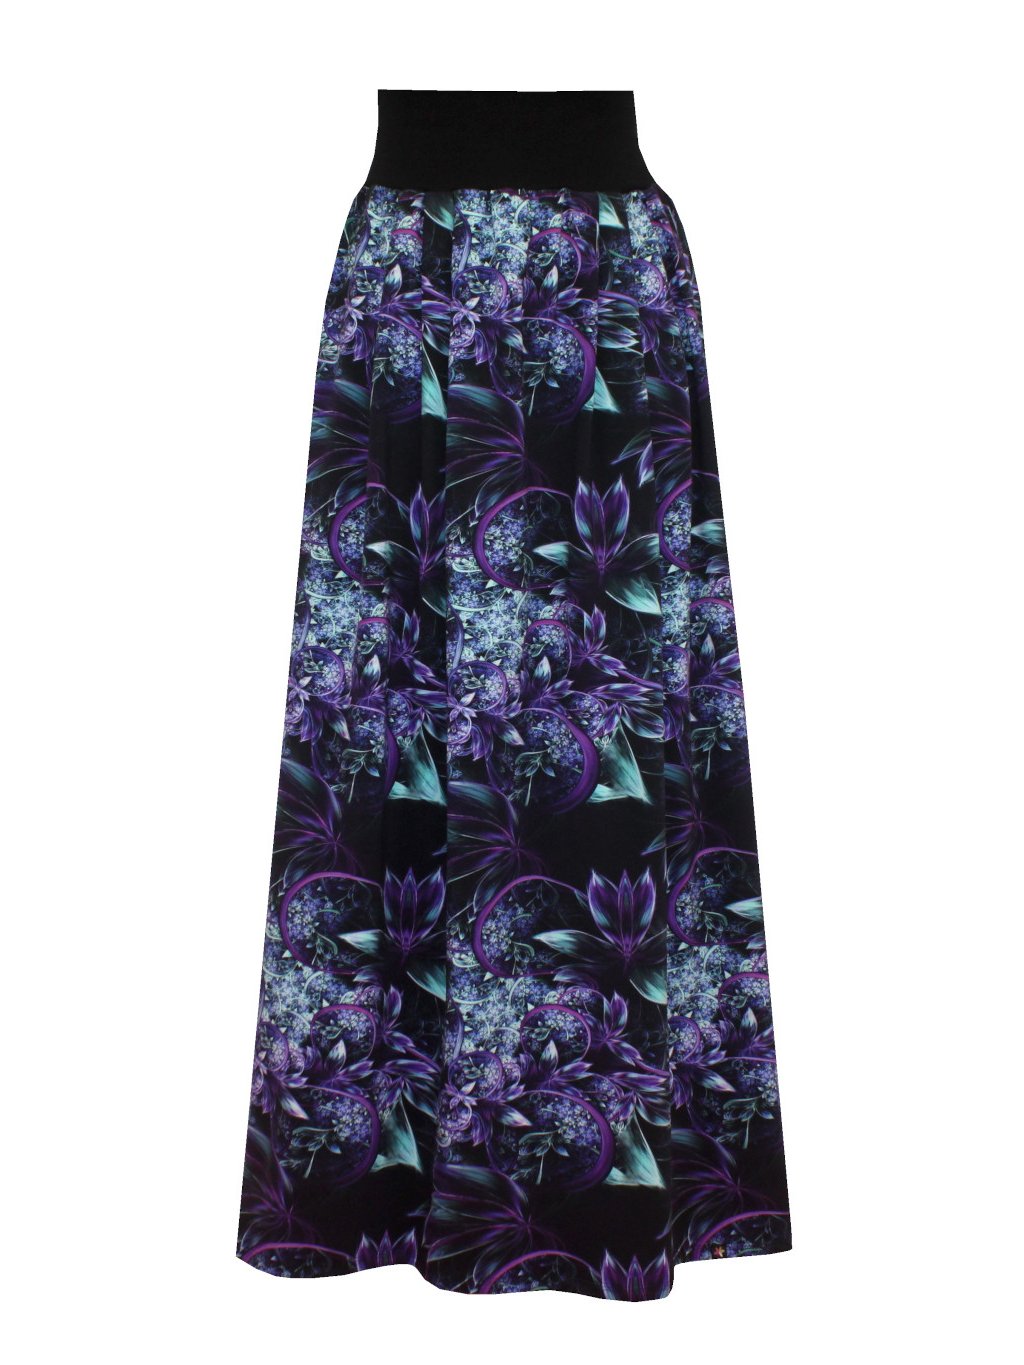 Dámská dlouhá sukně HELENE, sklady, fialovo-tyrkysové květy